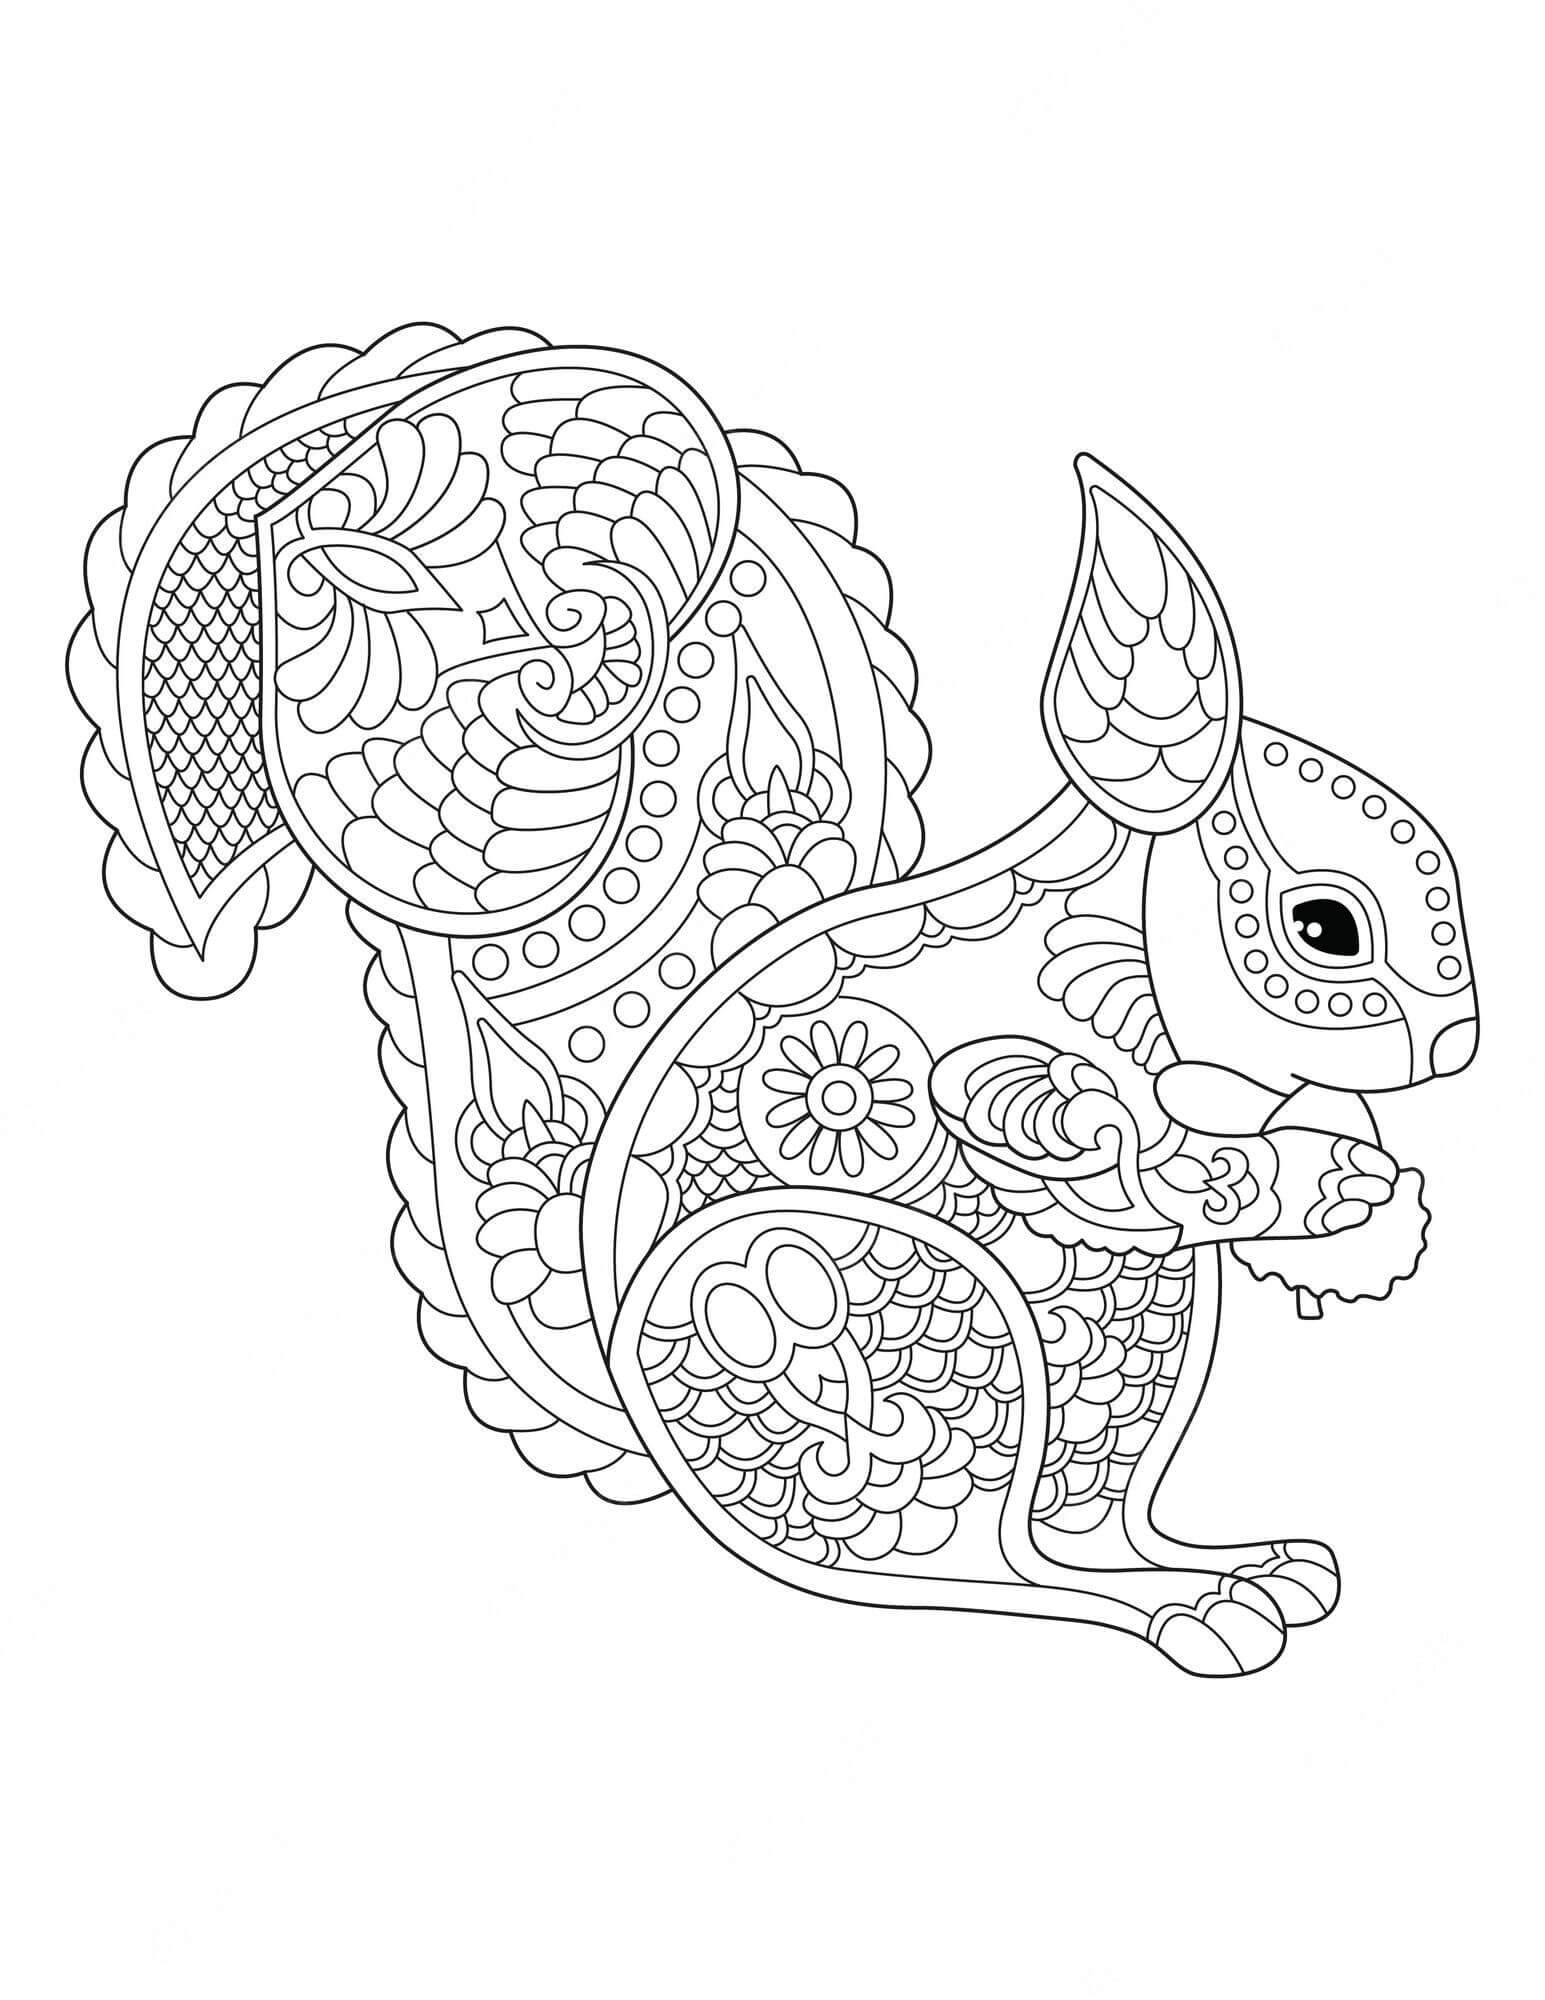 Mandala Squirrel Coloring Page - Sheet 6 Mandalas